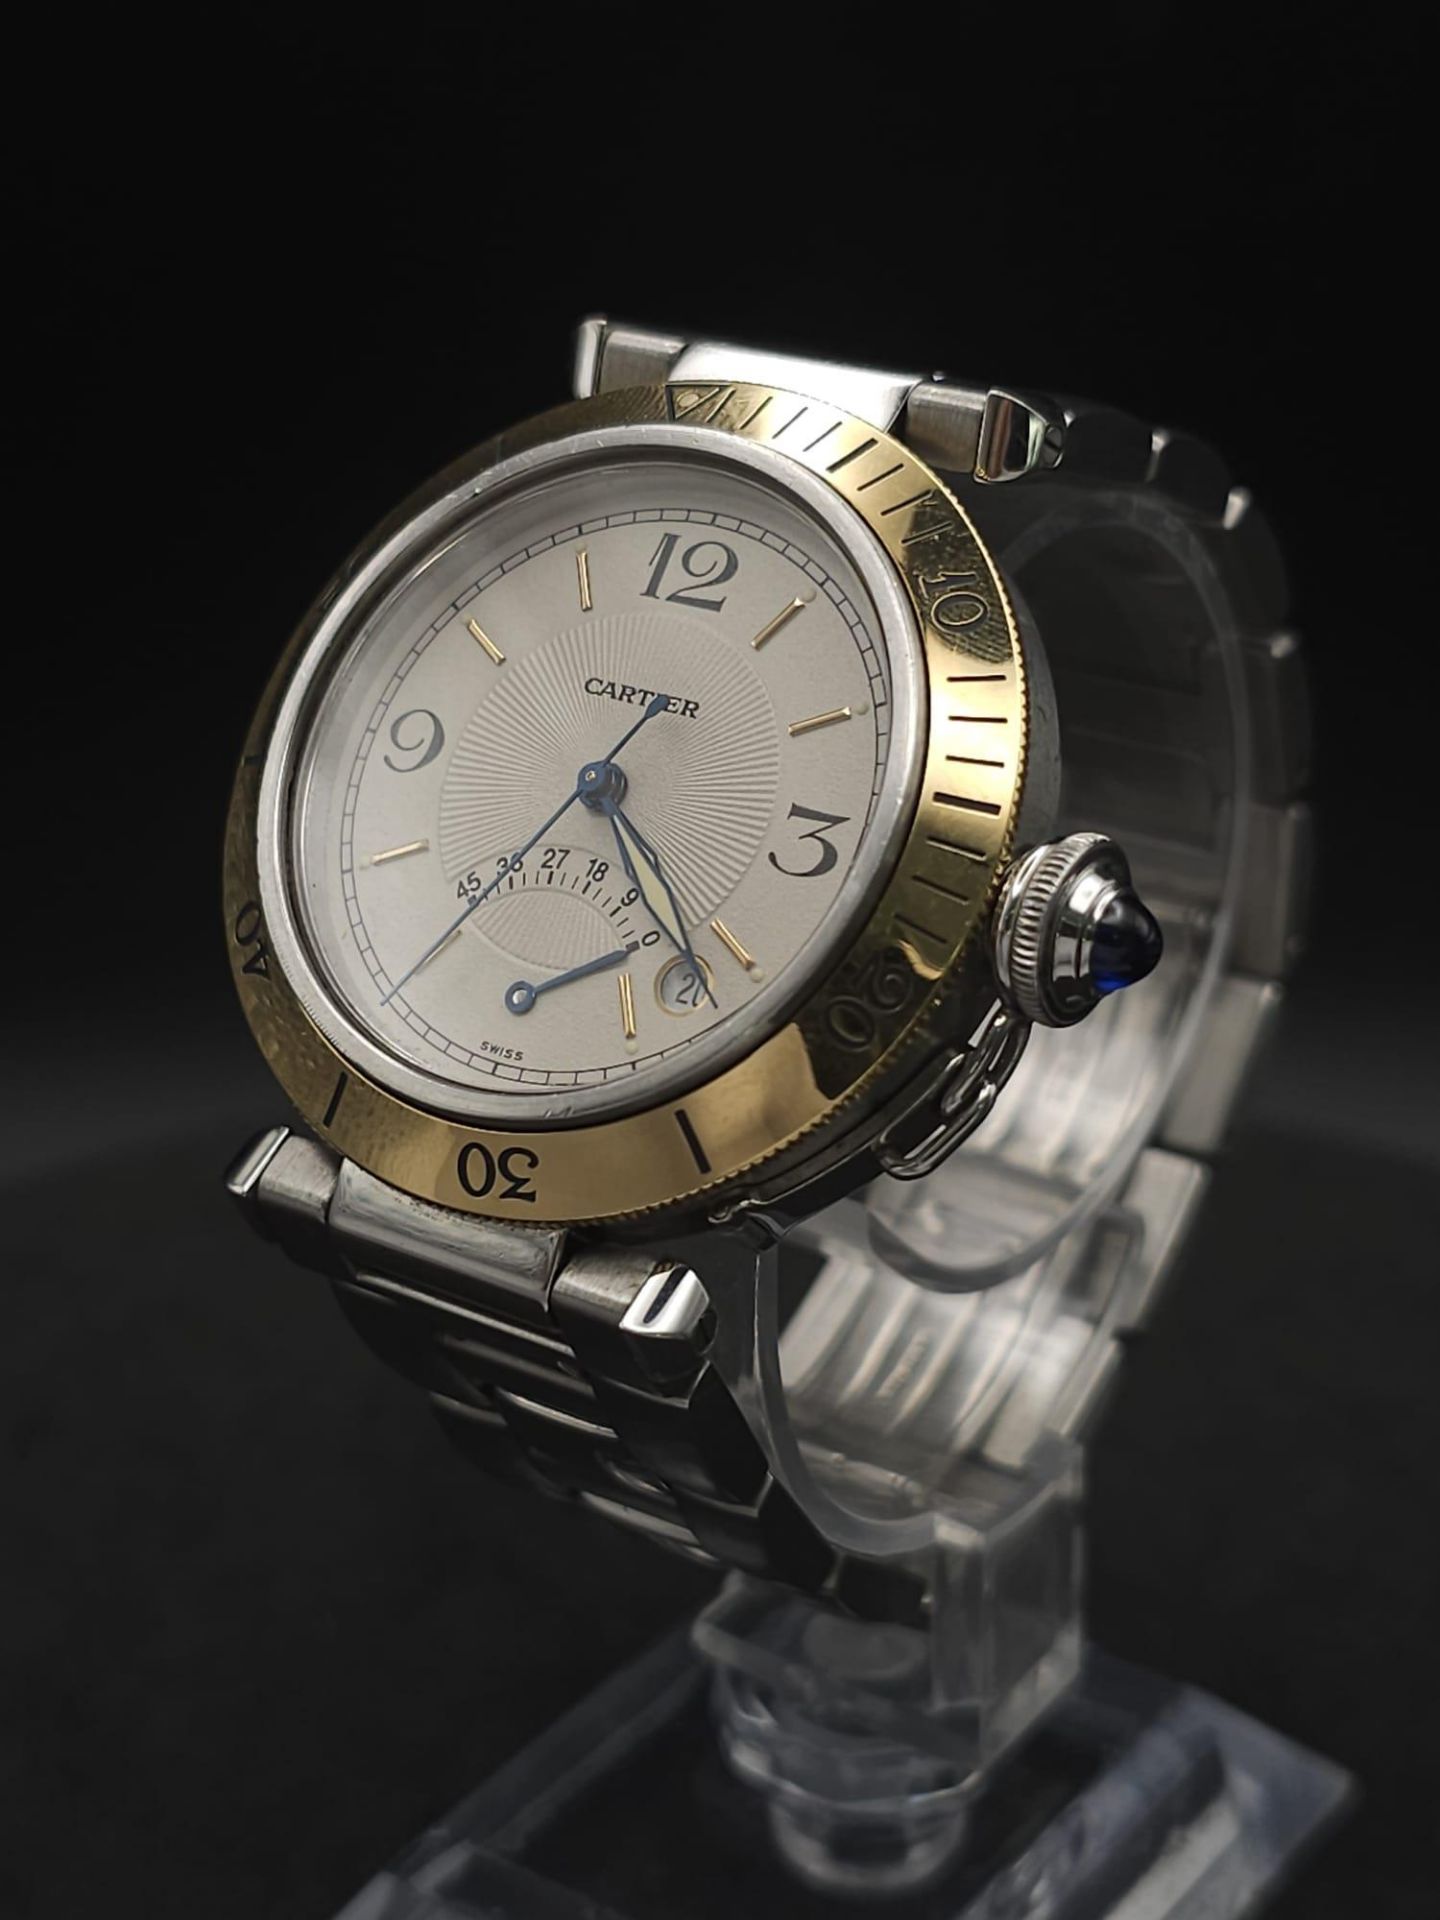 A Cartier de Pasha Automatic Gents Watch. Stainless steel bracelet and case - 38mm. Cream dial - Bild 3 aus 23